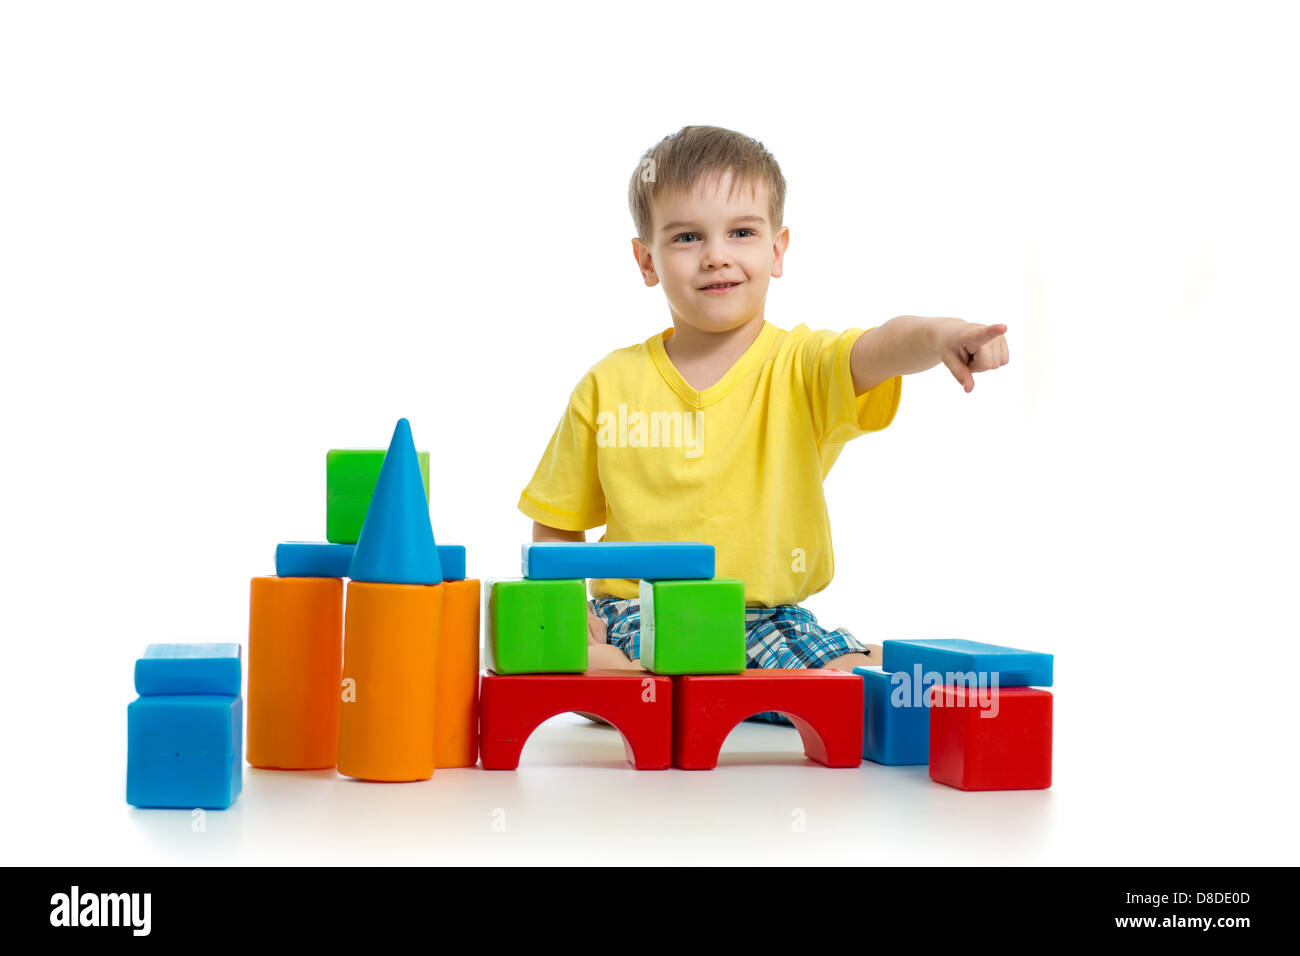 Kind mit bunten Bausteinen zu spielen und zeigt Richtung mit dem finger Stockfoto